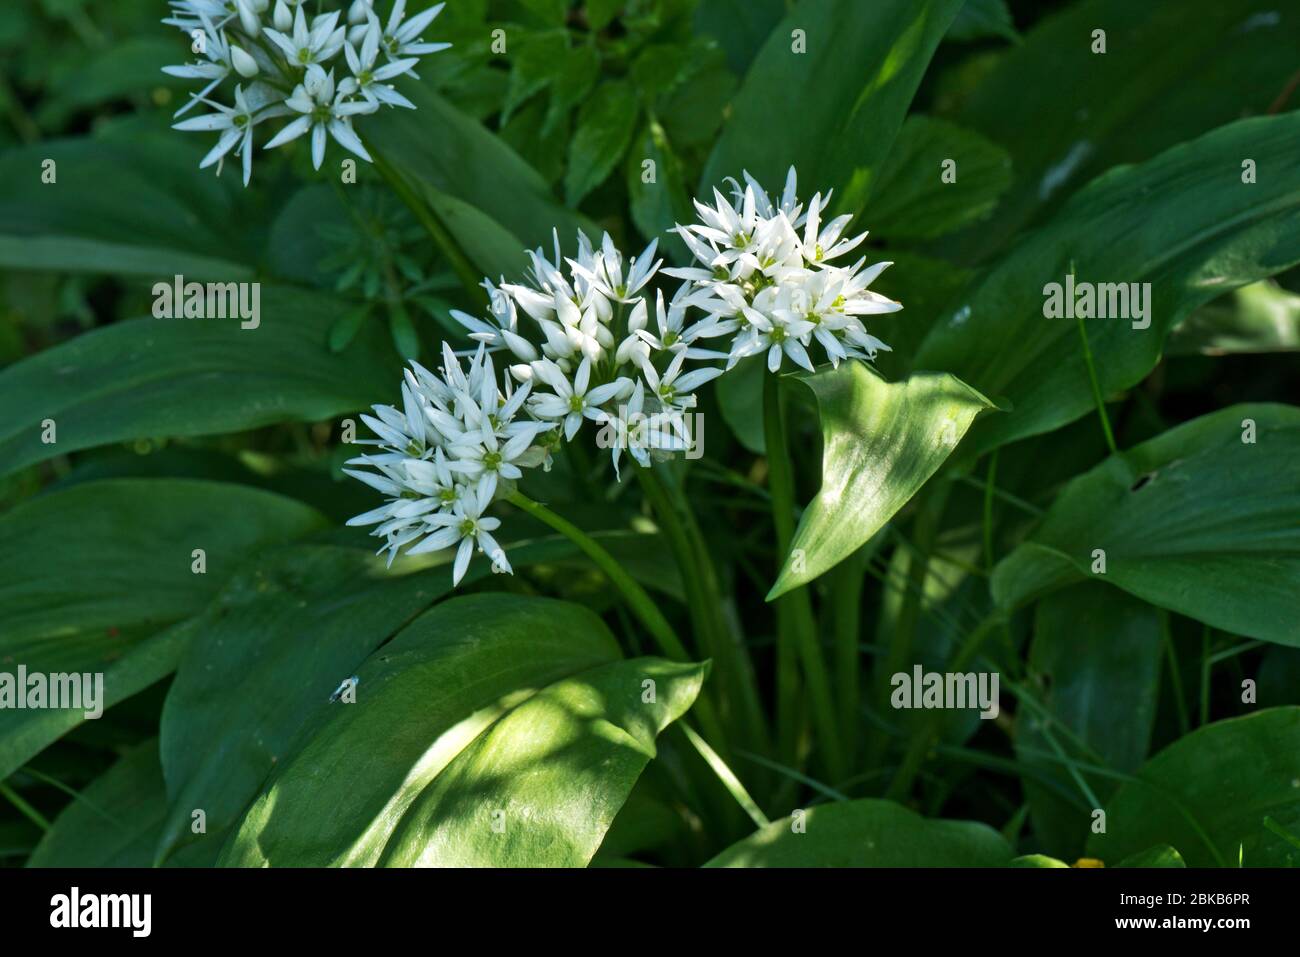 Ail sauvage ou ramsons (Allium ursinum) fleurs blanches d'une plante forestière avec des feuilles comestibles utilisées dans la cuisine, Berkshire, avril Banque D'Images